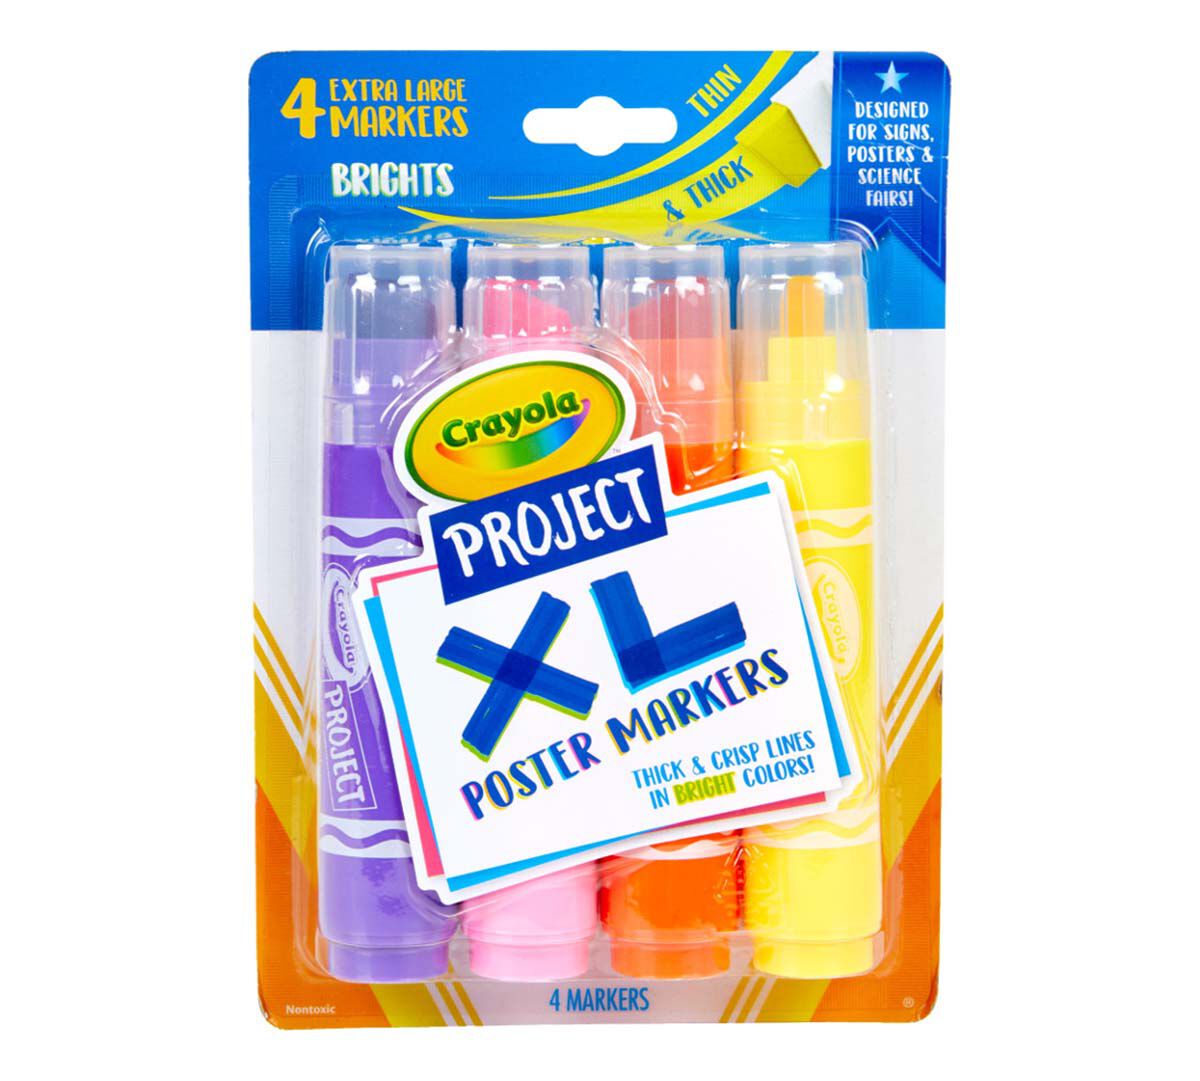 crayola thin markers